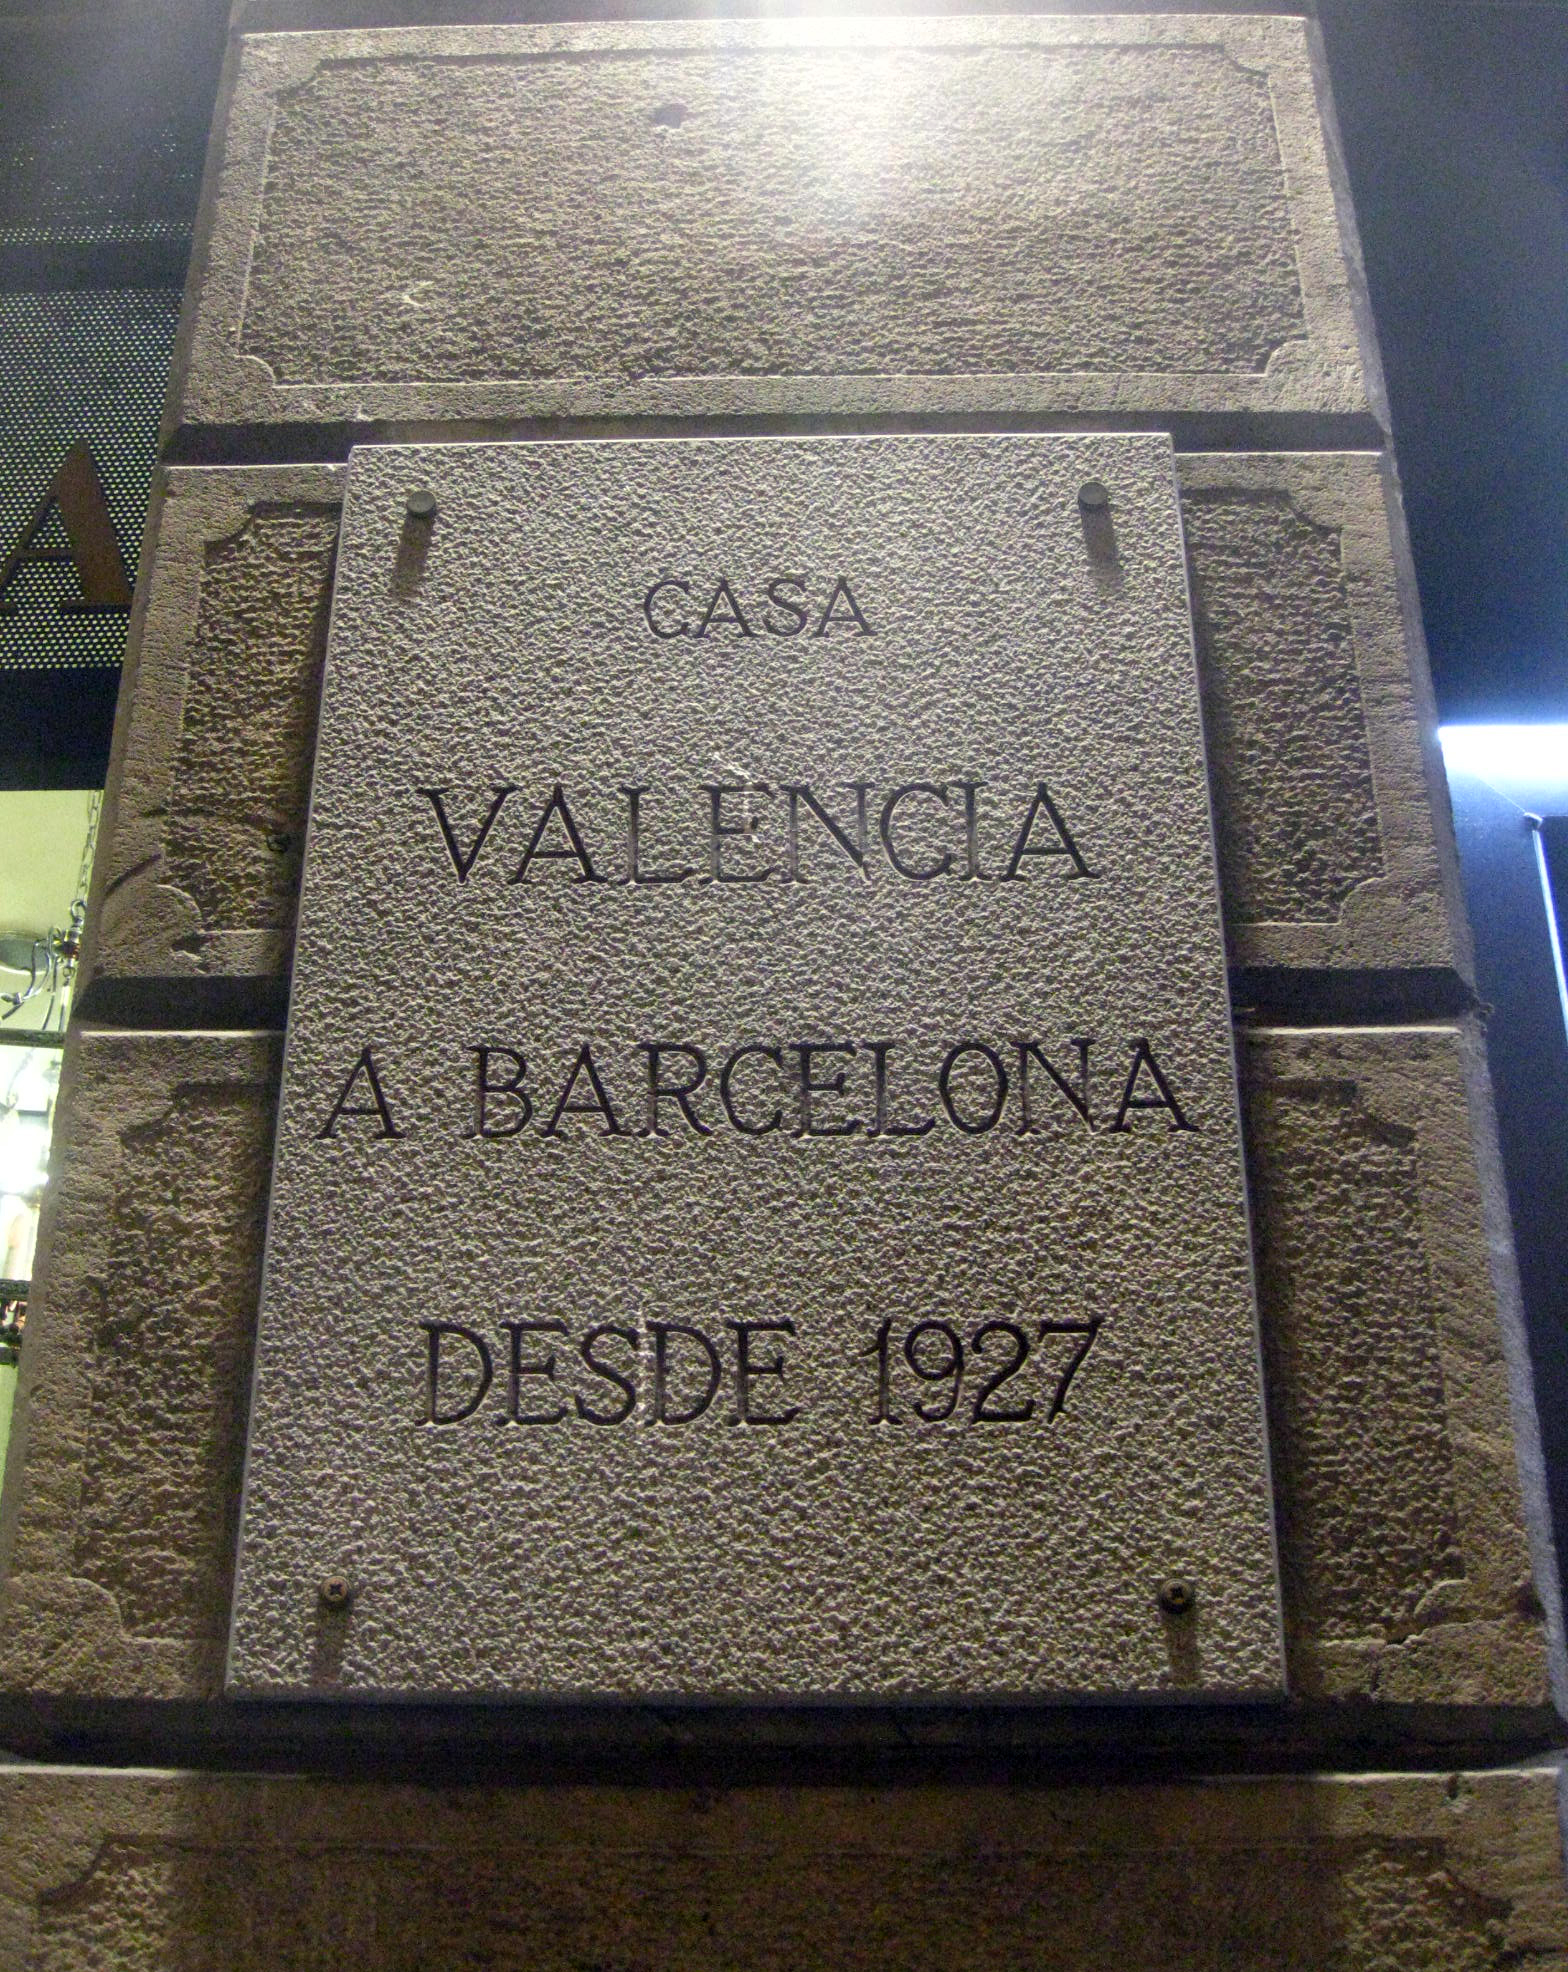 Casa valència a barcelona